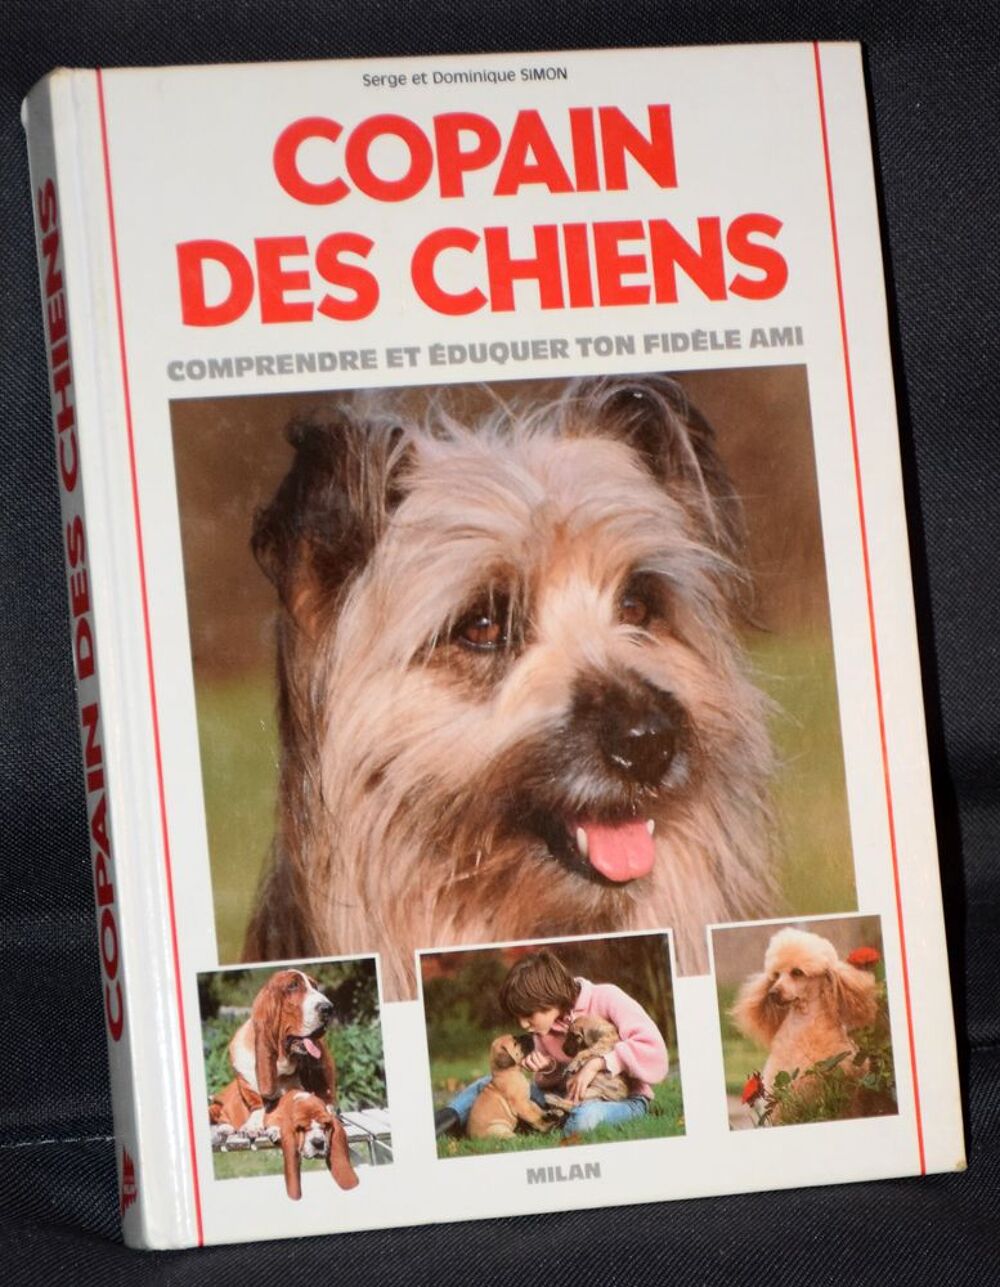 Copain Chien - Serge et Dominique Simon - 1990 Livres et BD